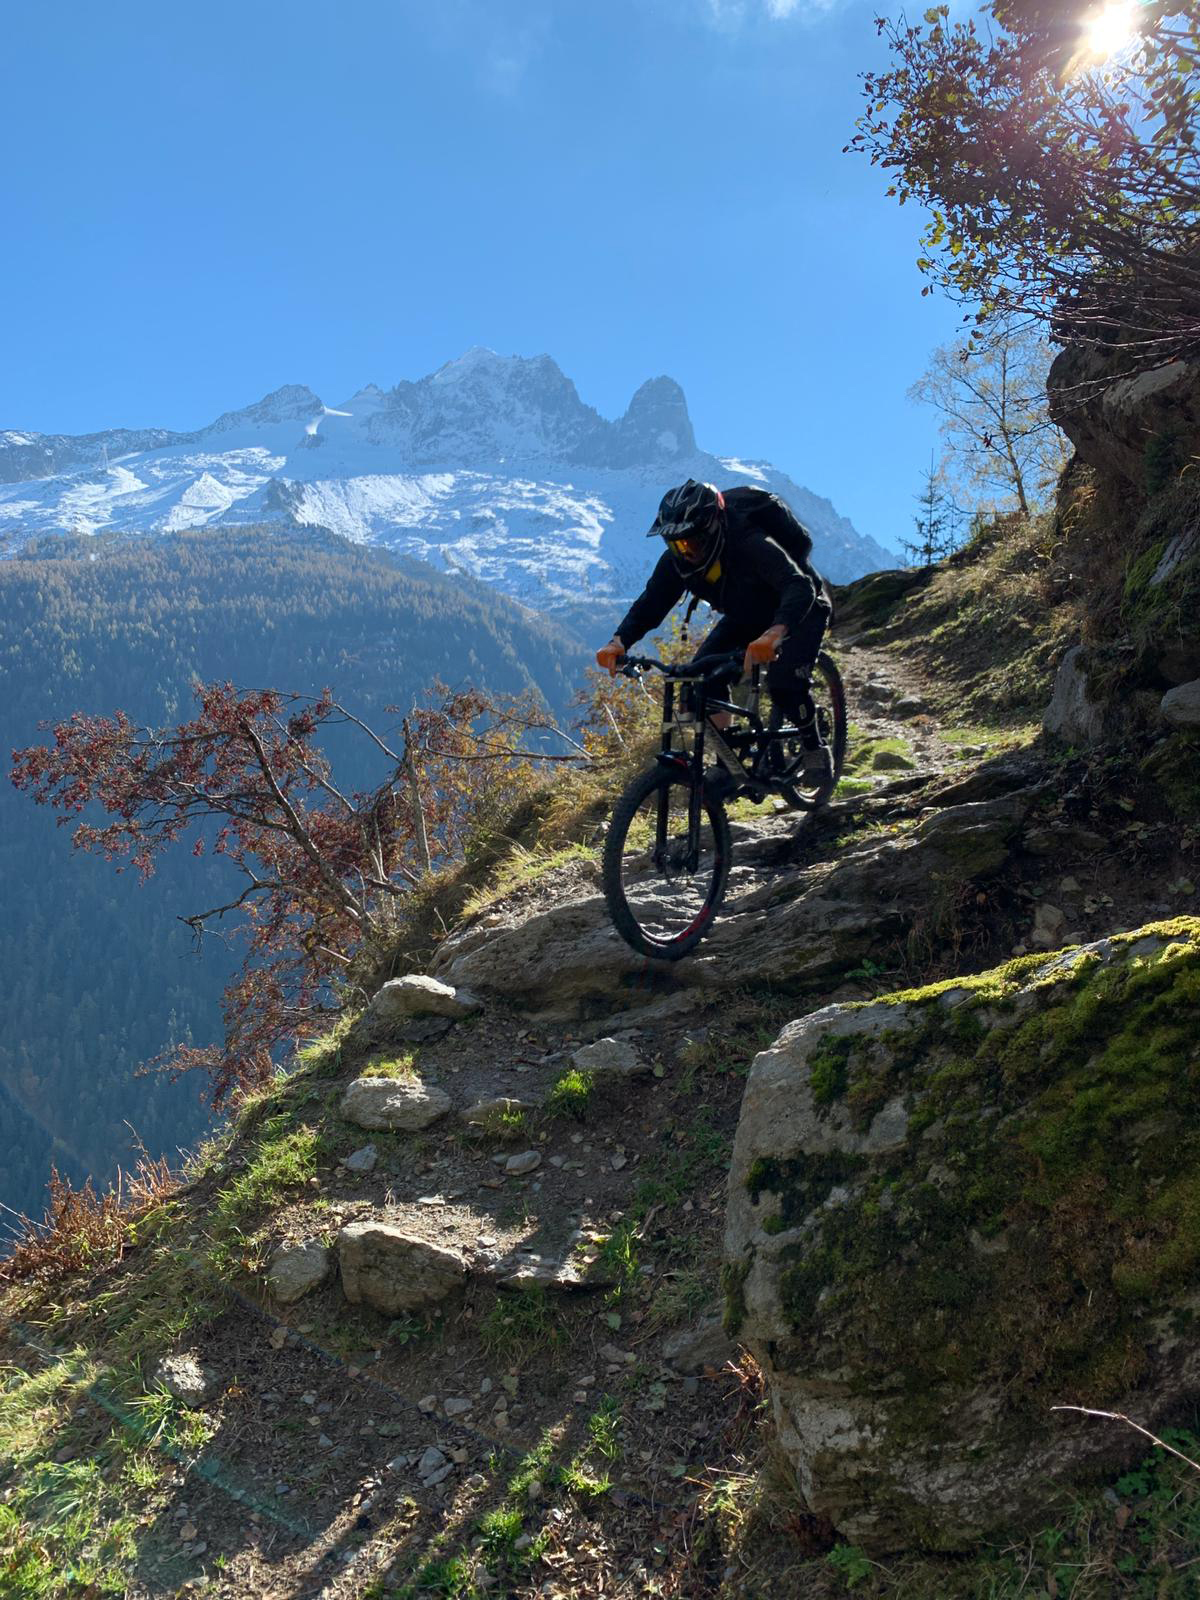 image showing mountain biker riding down a mountain